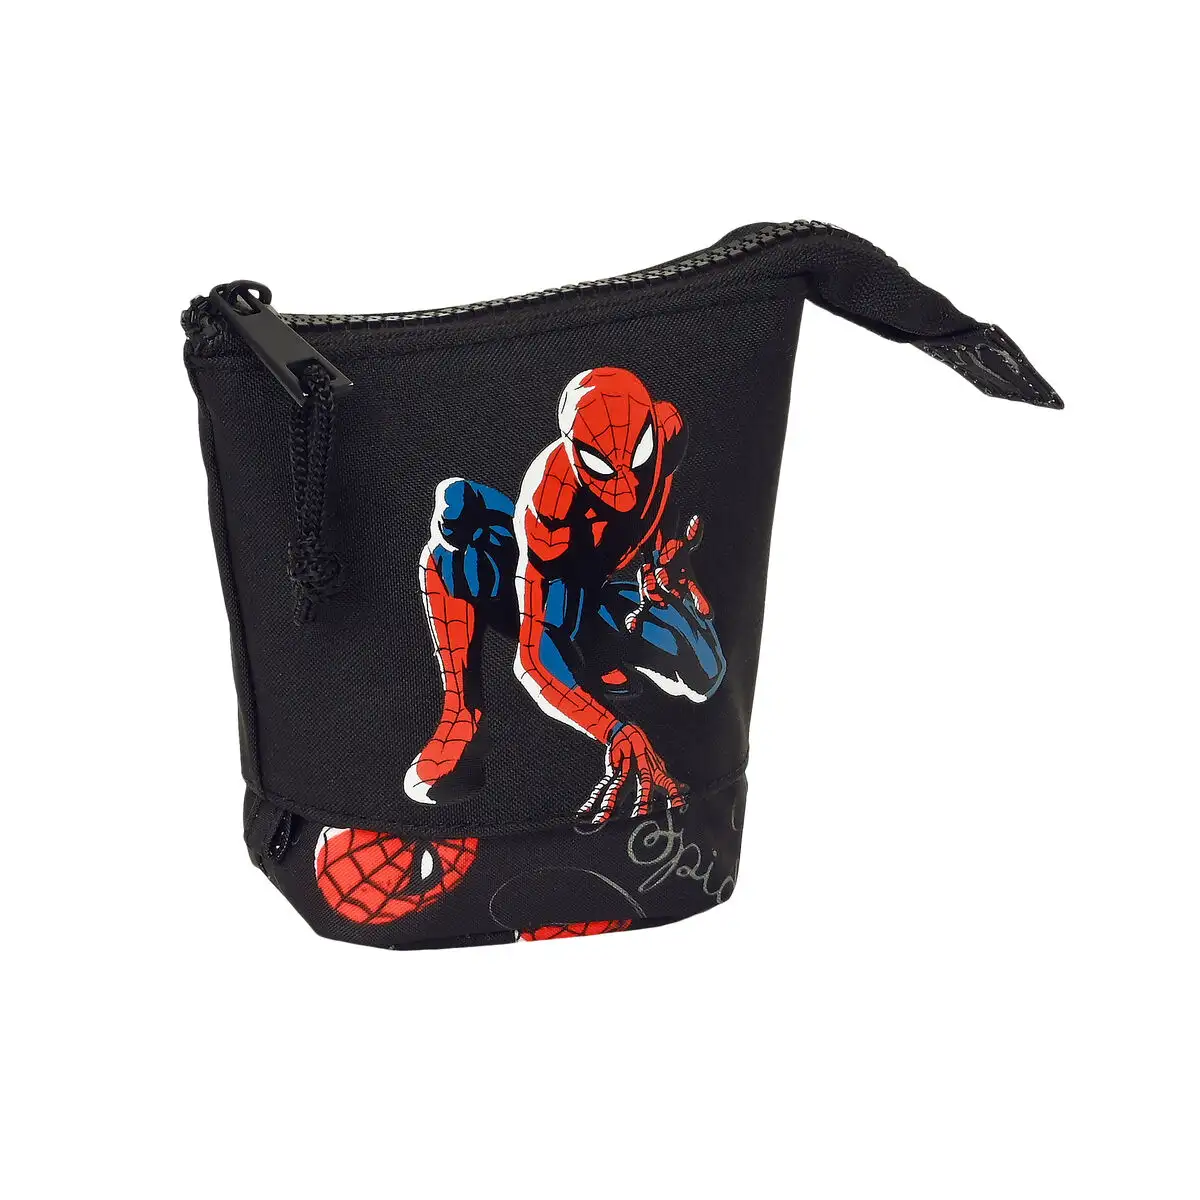 Coffret spiderman hero noir 8 x 19 x 6 cm _3107. DIAYTAR SENEGAL - Votre Source d'Inspiration Shopping. Parcourez nos rayons et trouvez des articles qui vous inspirent, que ce soit pour votre style, votre maison ou votre vie quotidienne.